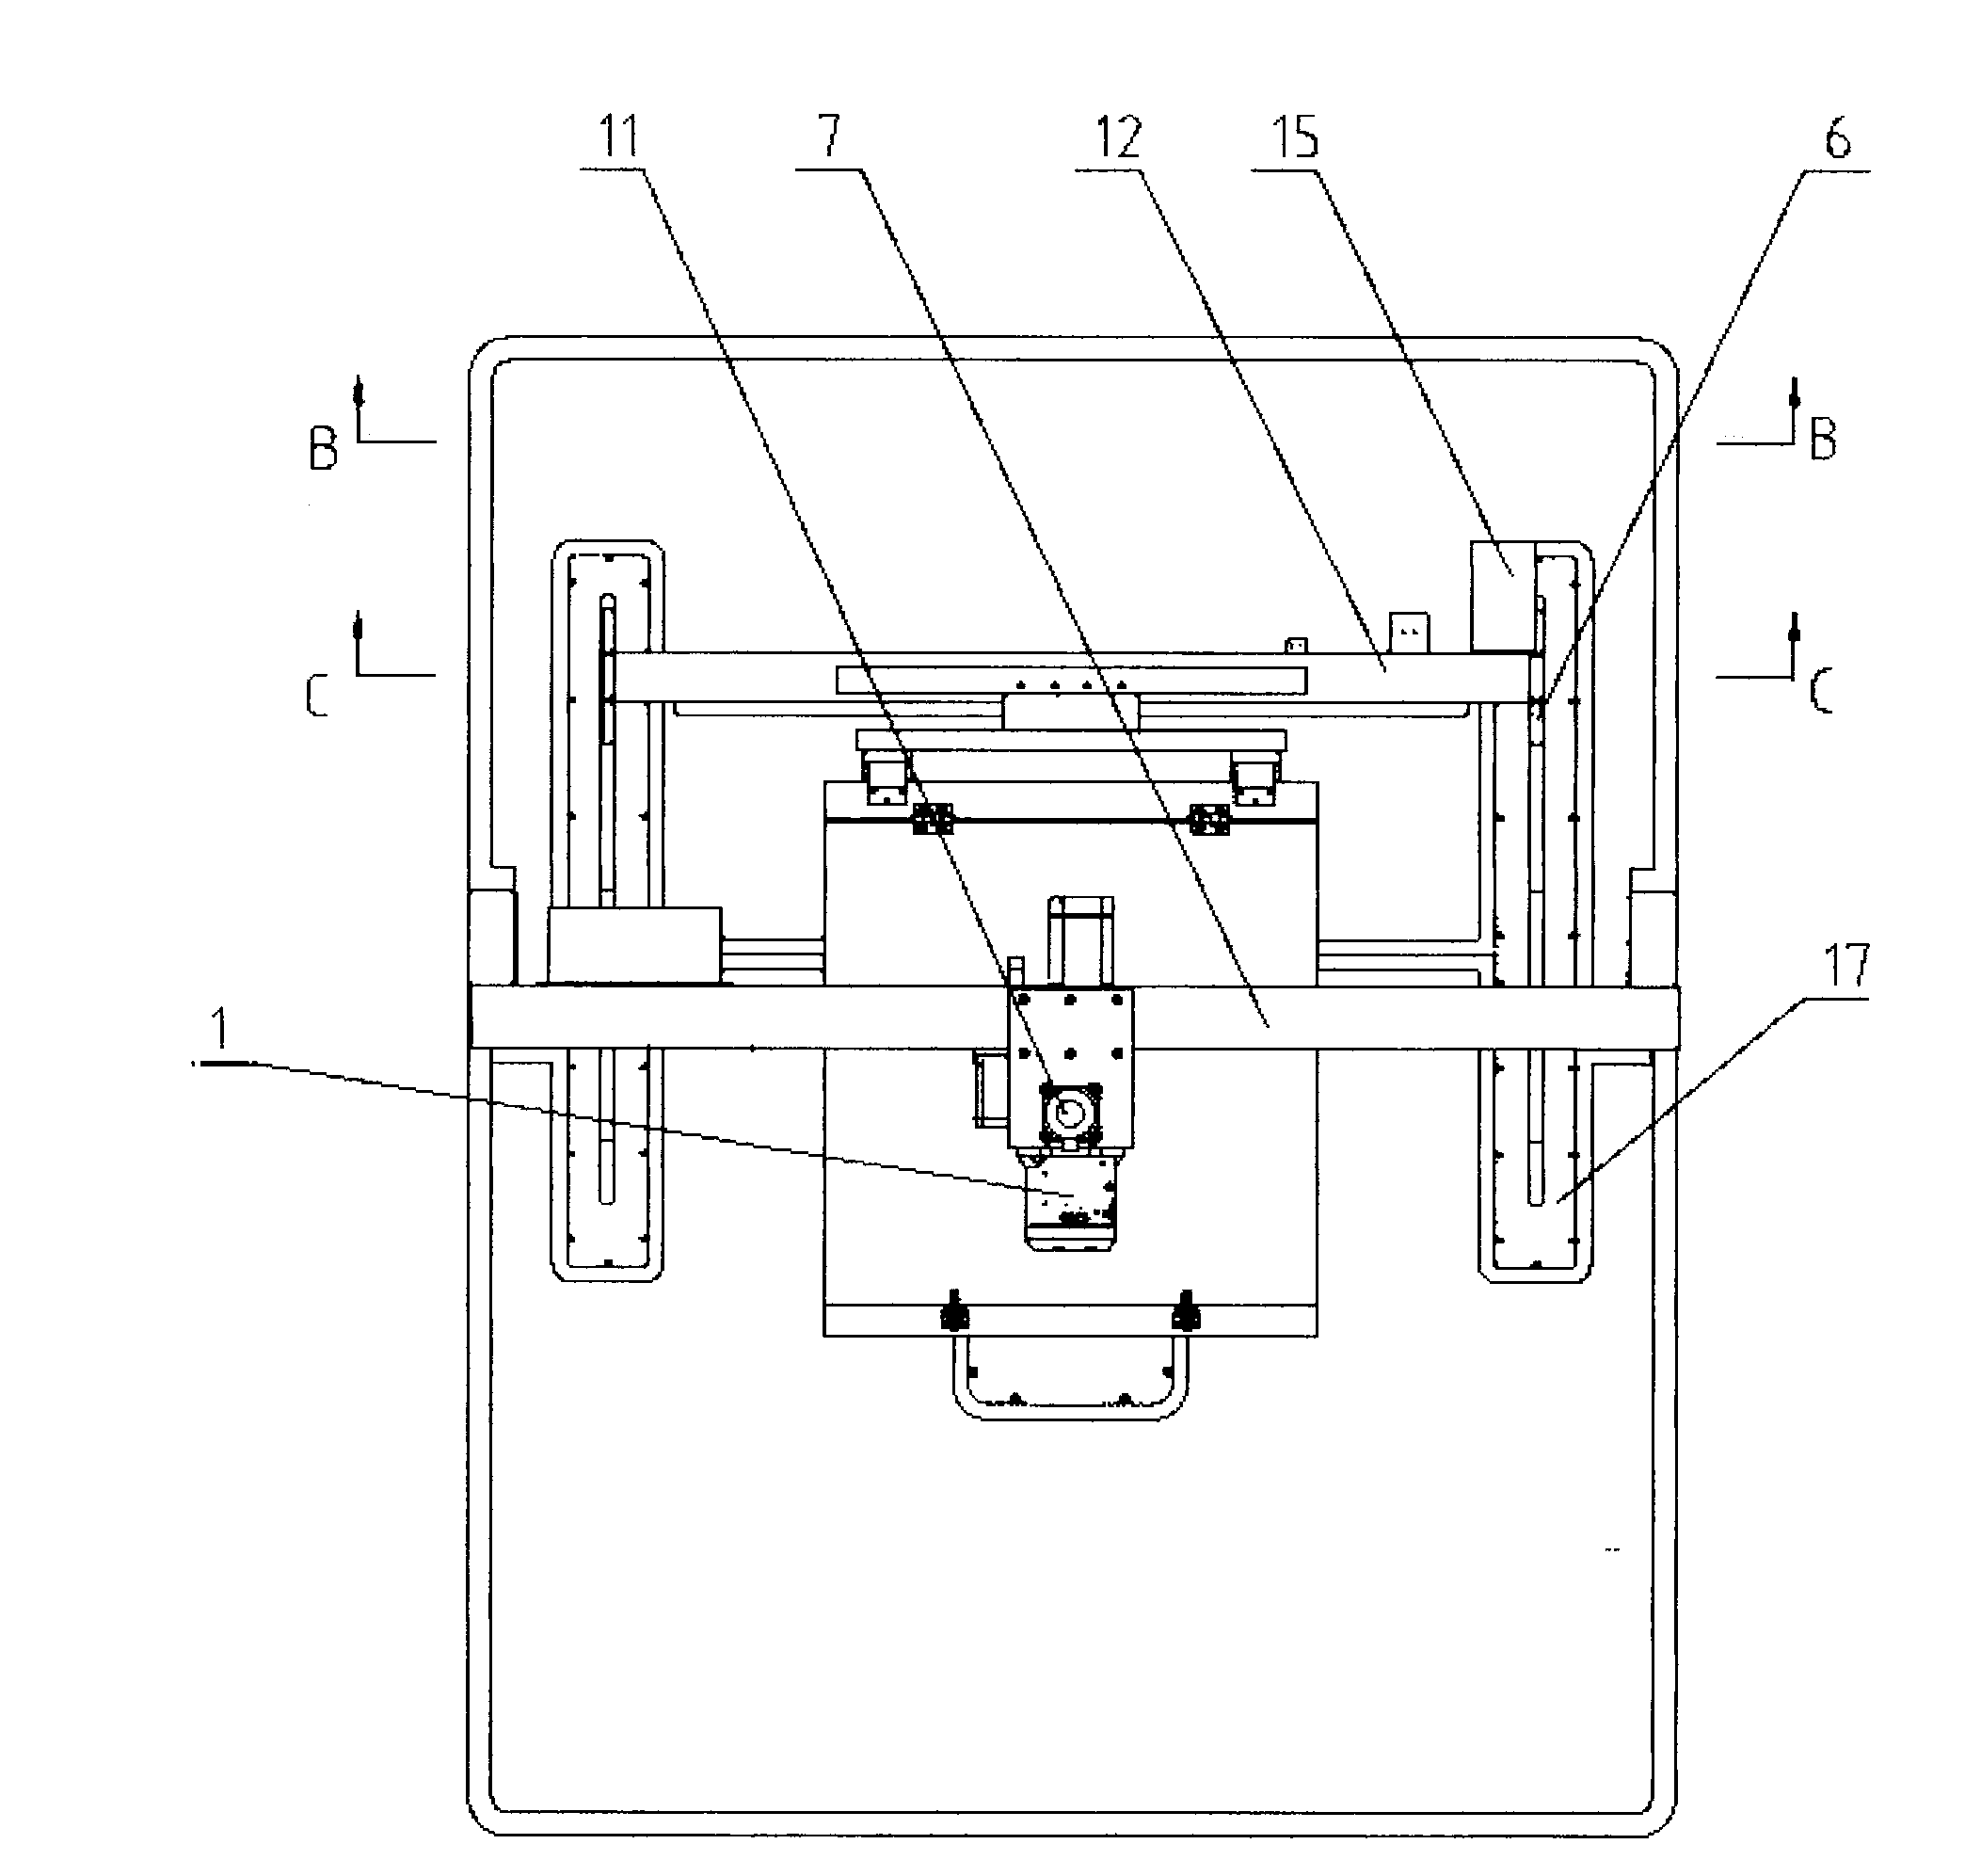 Gantry type large-width pattern sewing machine